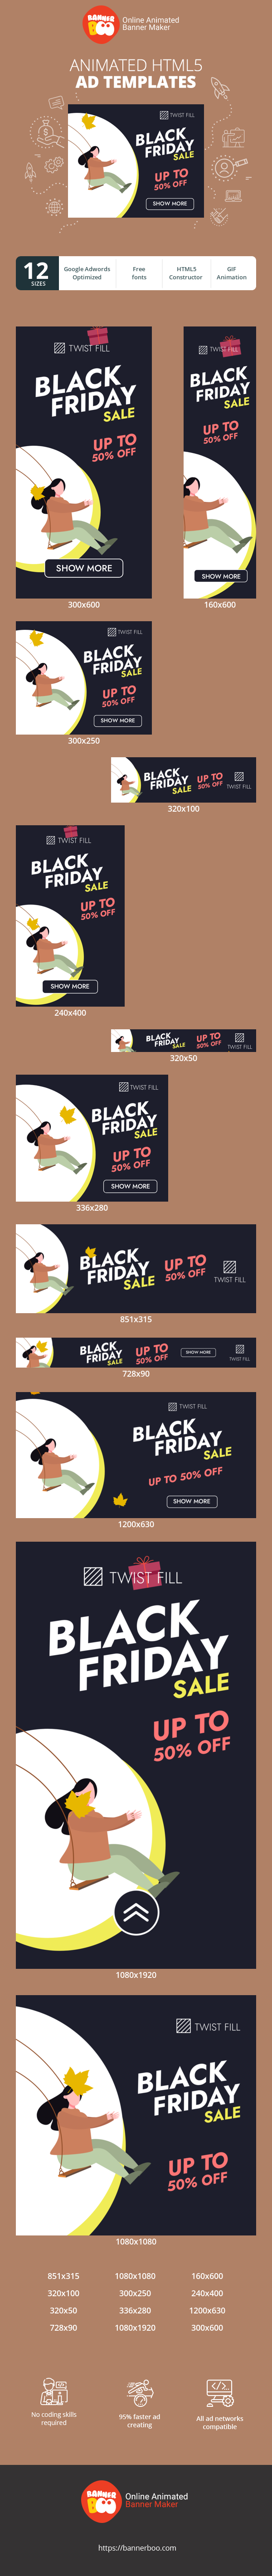 Шаблон рекламного банера — Black Friday Sale — Up To 50% Off